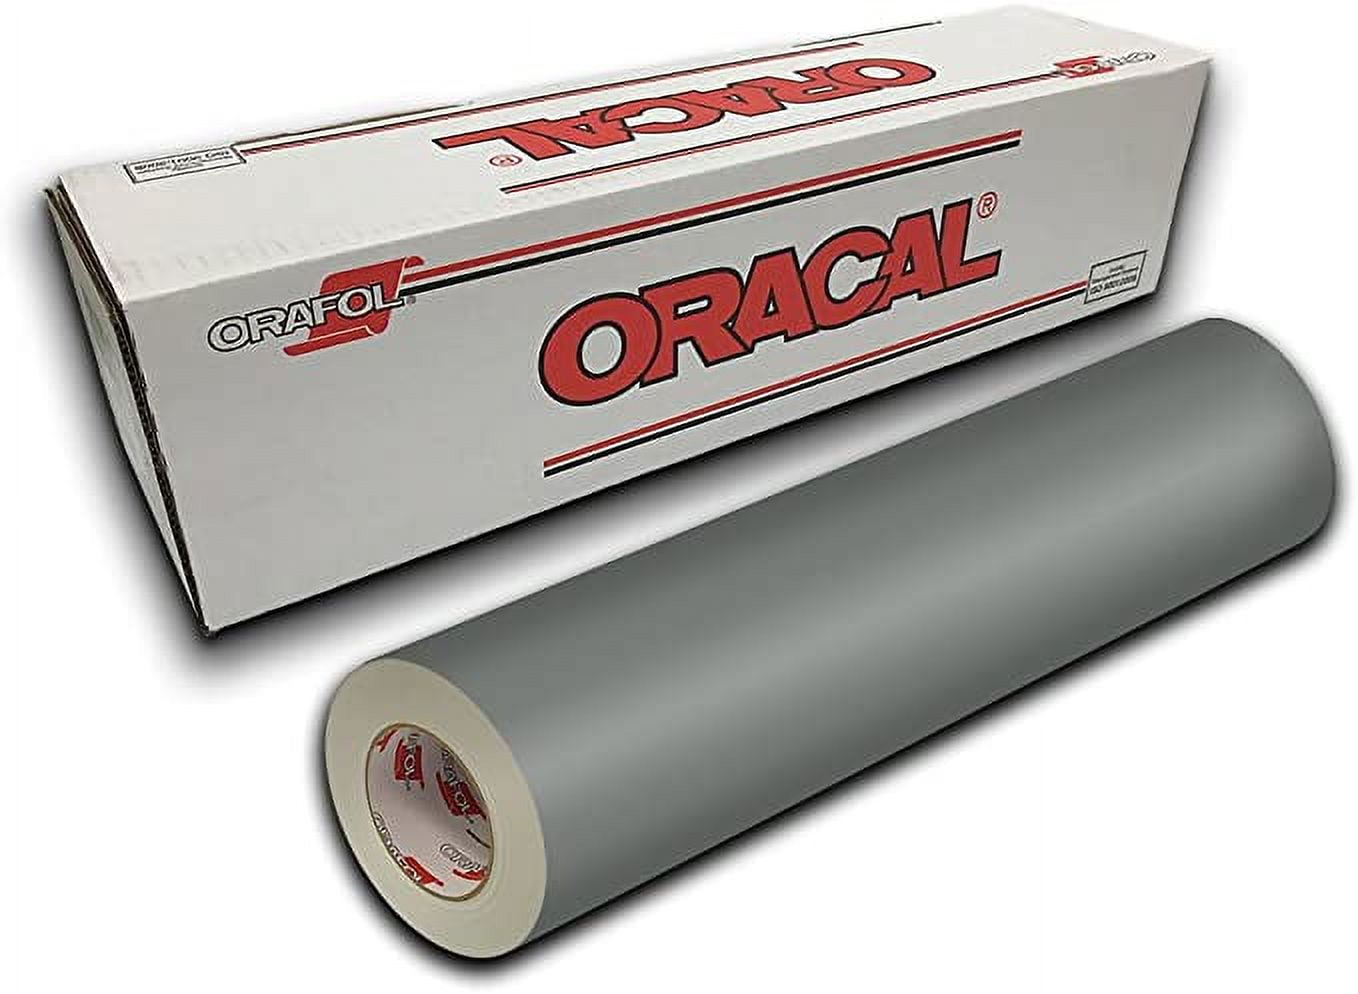 Oracal 651 Series Intermediate Vinyl